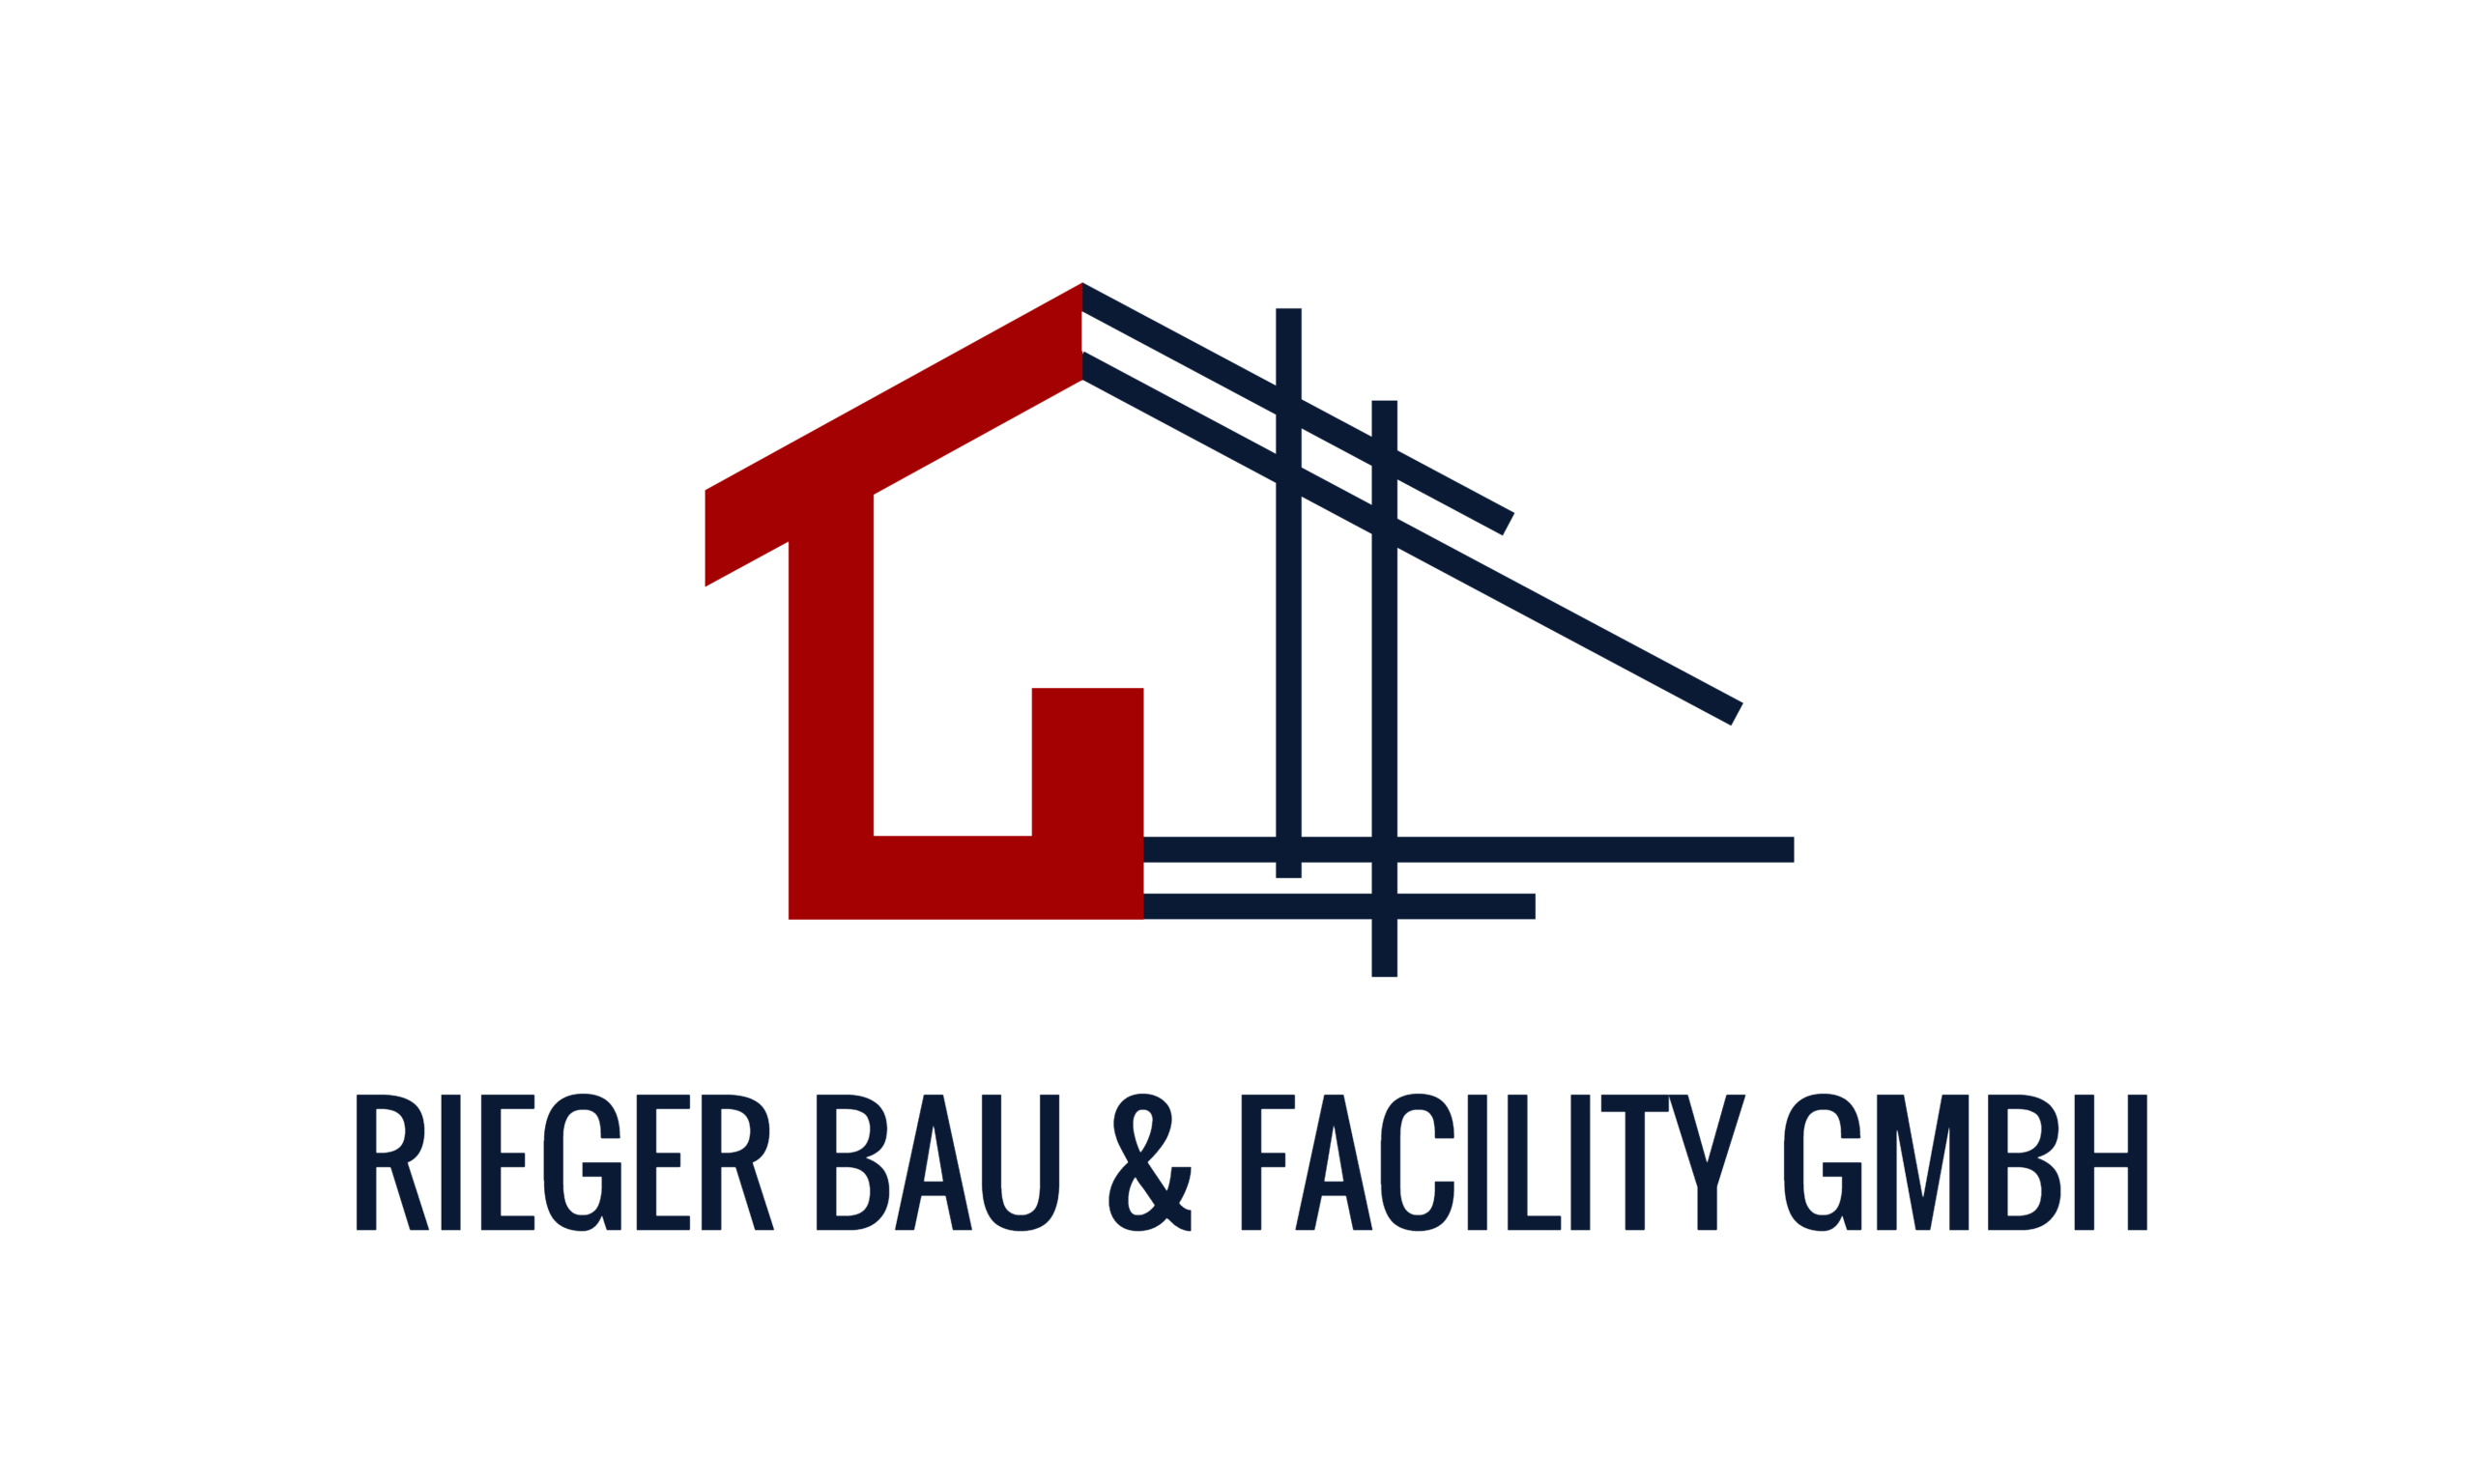 Rieger Bau & Facility GMBH